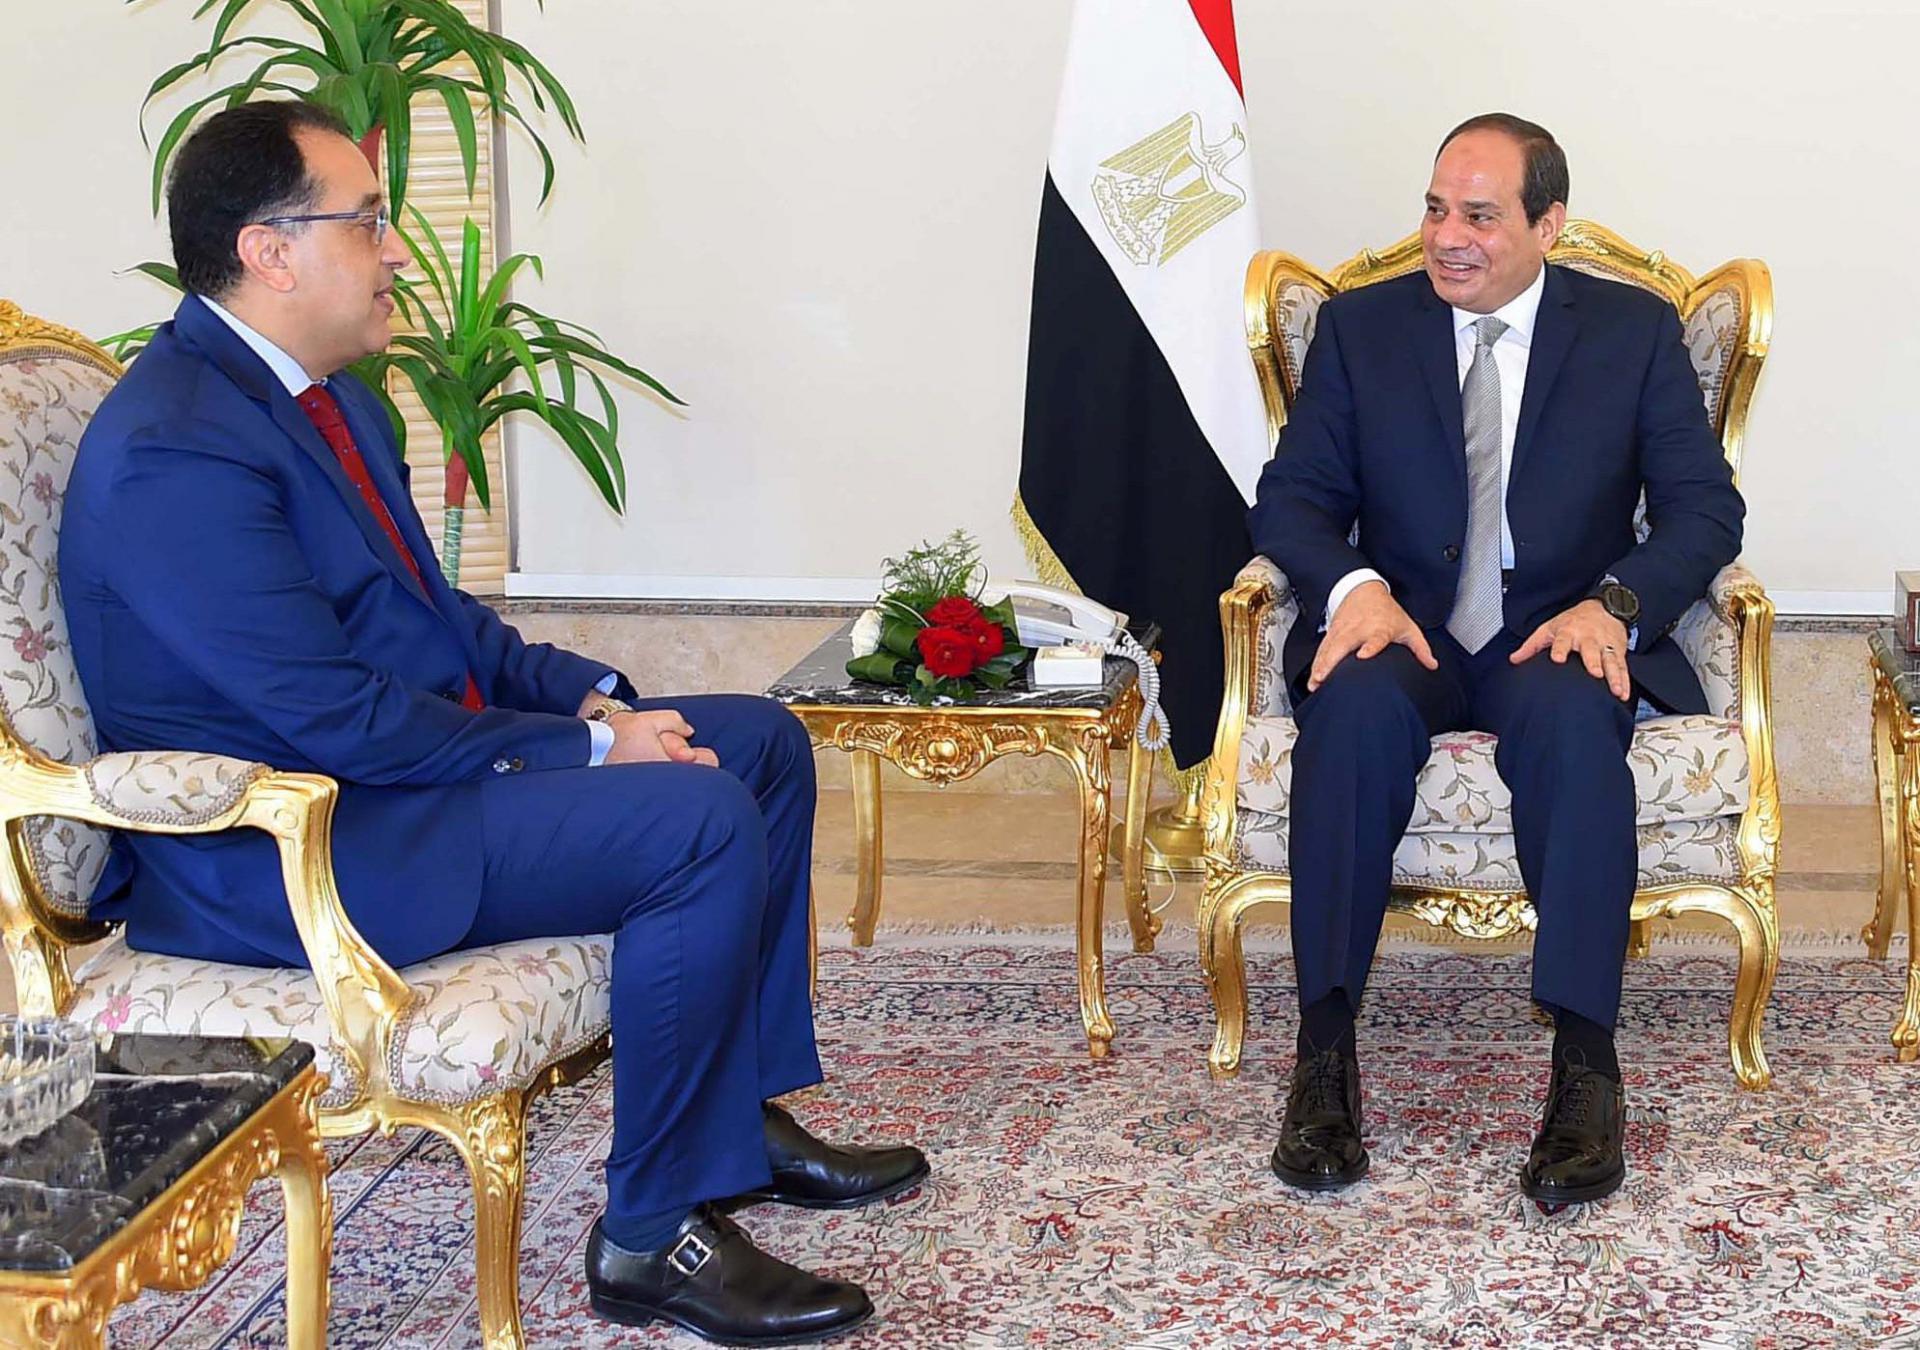 الرئيس المصري يتحدث مع رئيس الحكومة المكلف